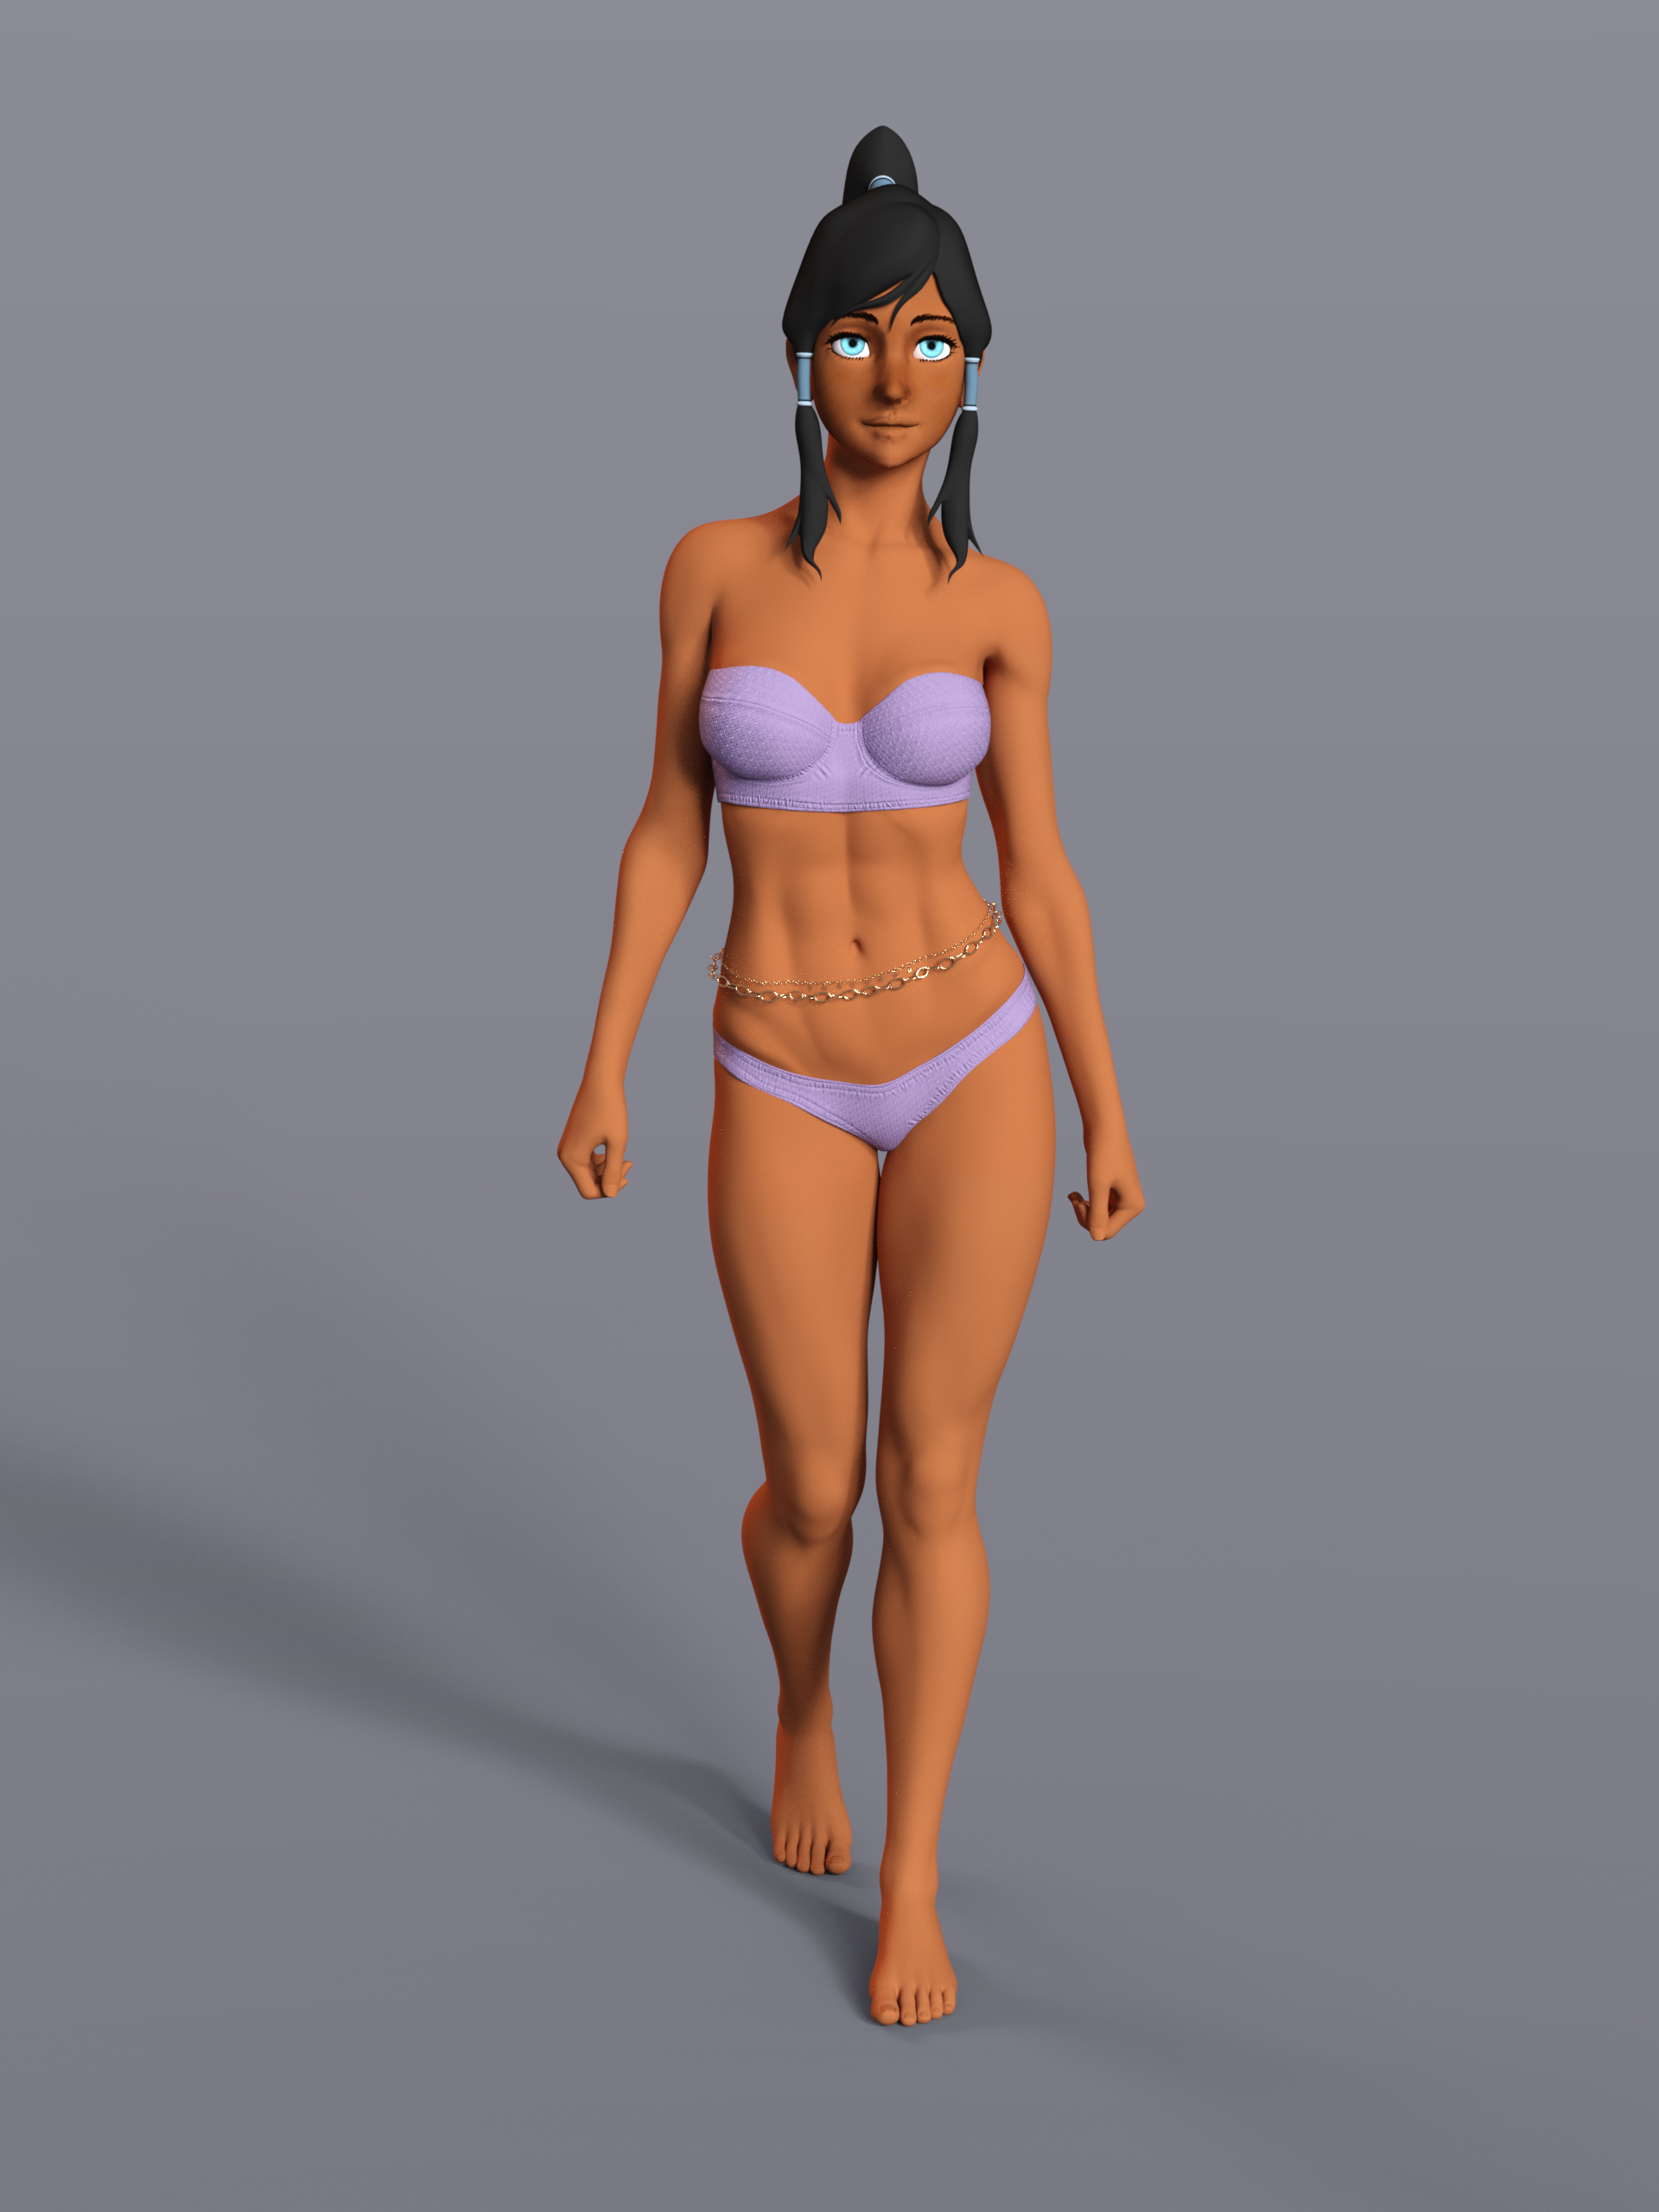 Romantiek Weiland Intrekking Korra - Bikini II by zeneox on DeviantArt